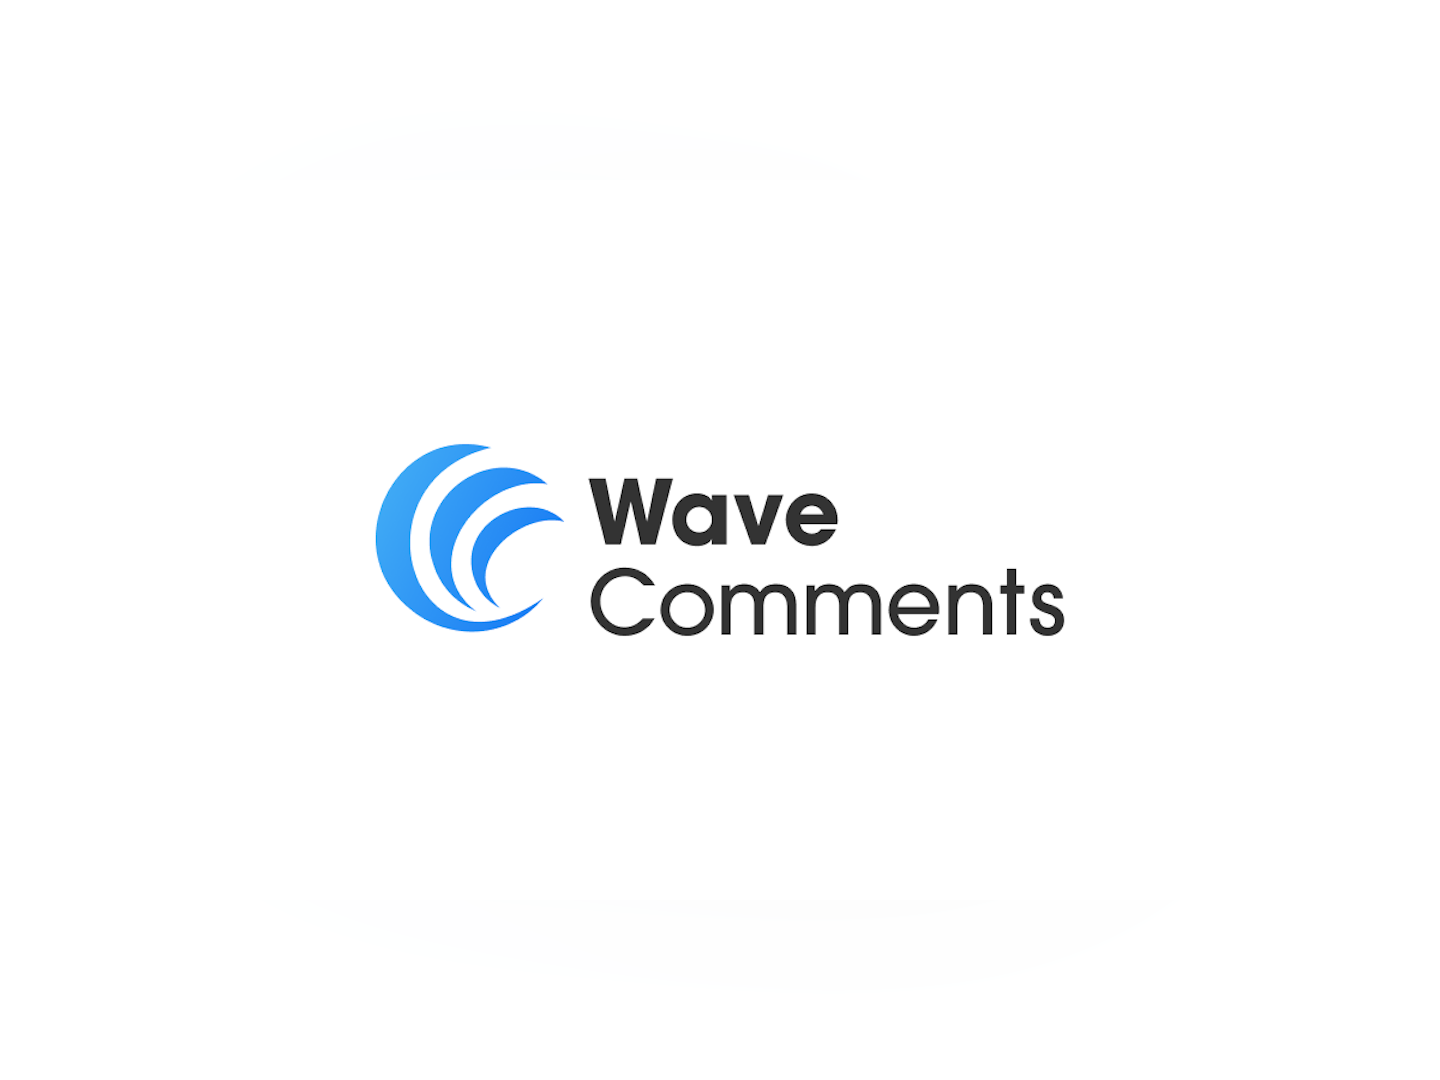 Wave Comments